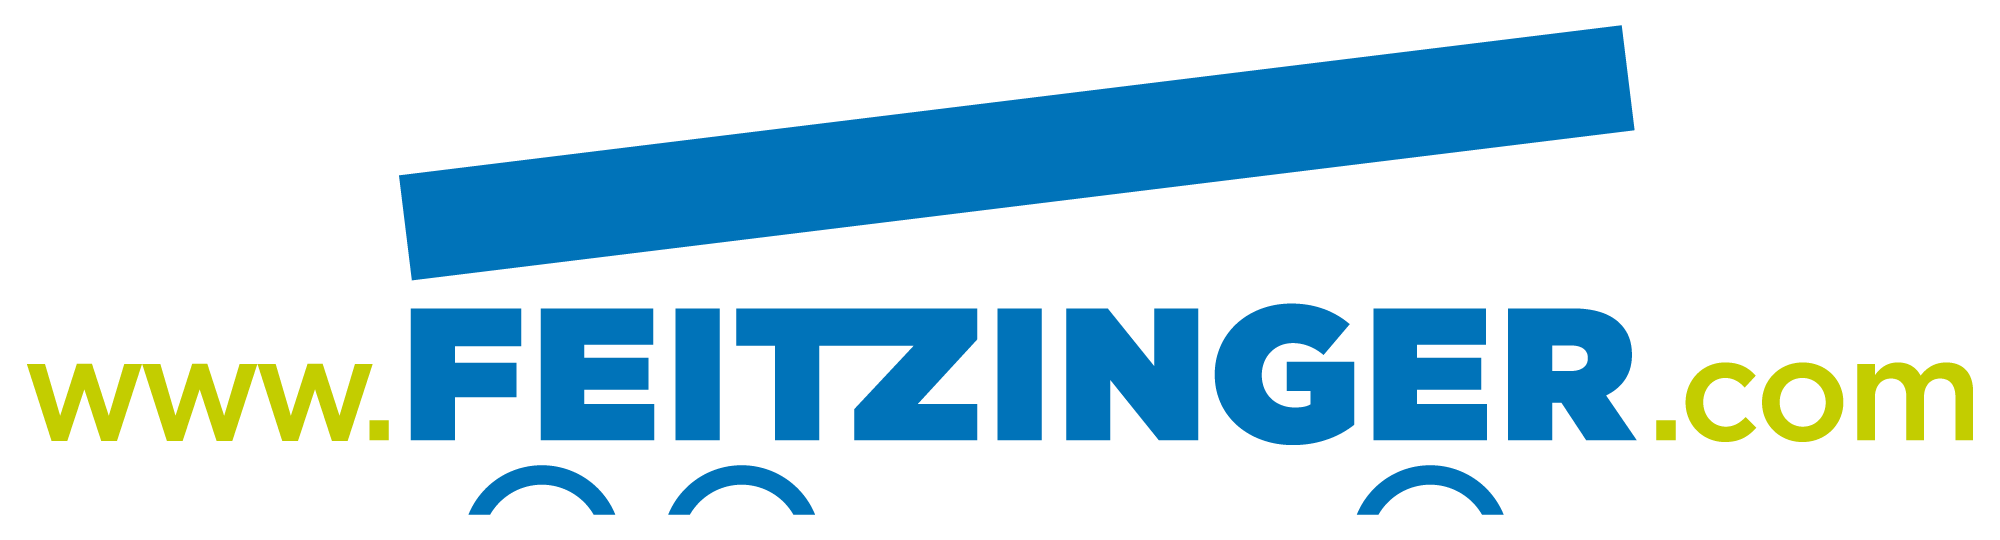 (c) Feitzinger.com